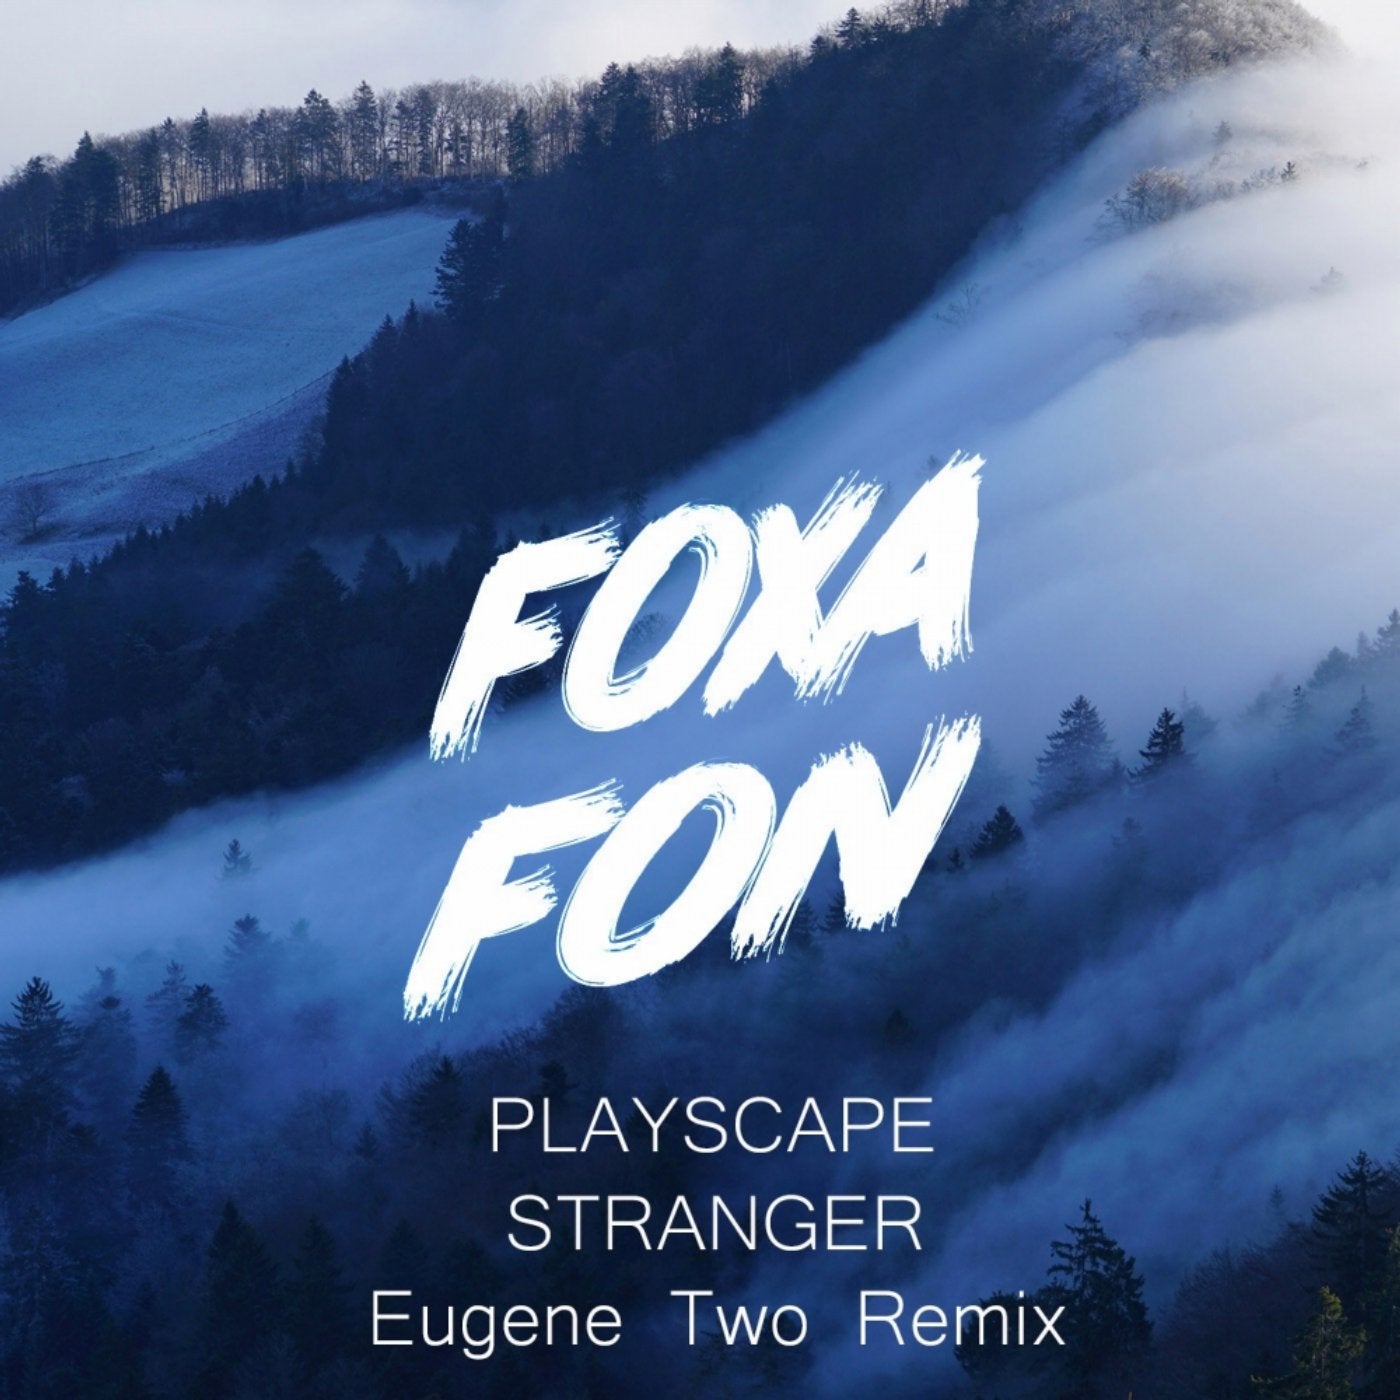 Stranger (Eugene Two Remix)